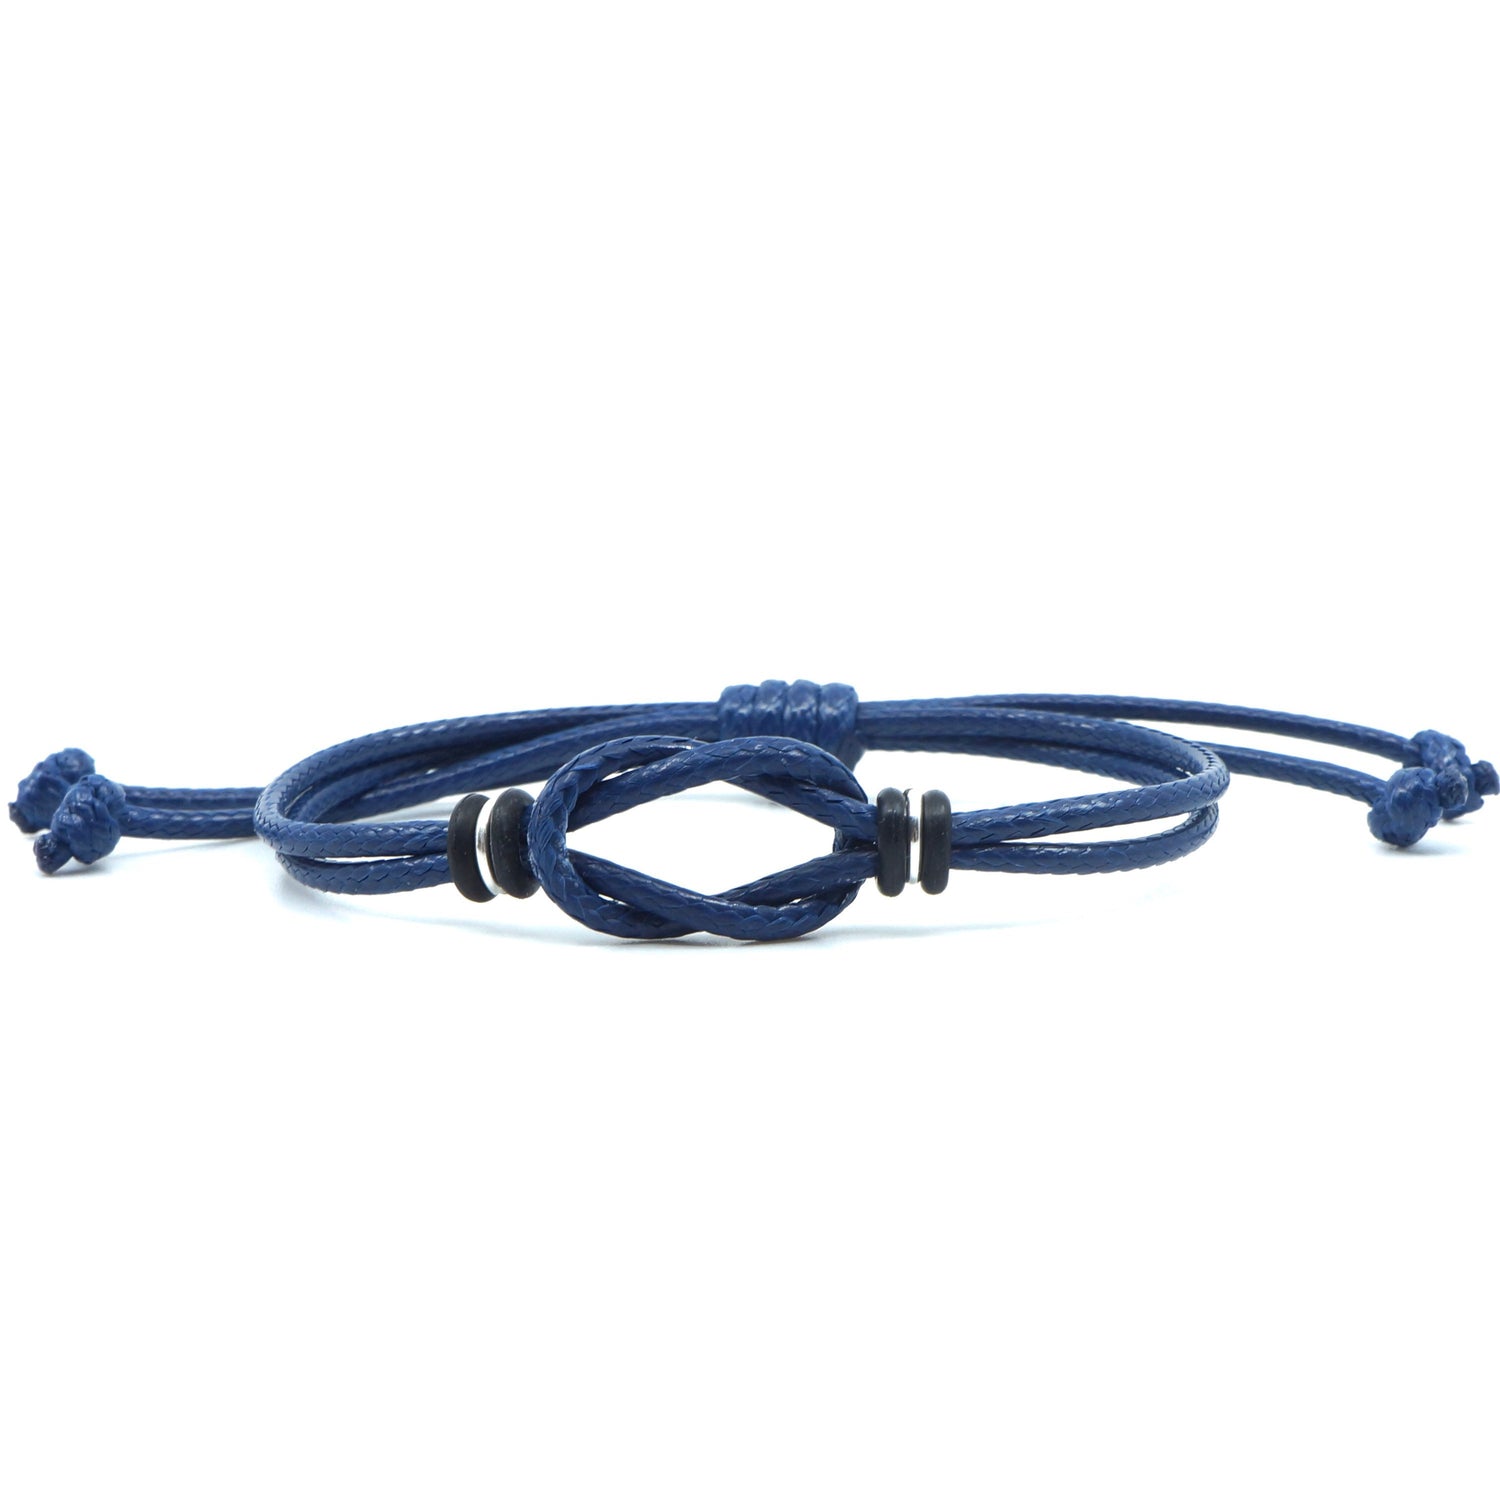 Celtic Knot Bracelet, Blue Waxed Cord Bracelet, Boys Bracelet, Adjustable Bracelet, Infinity Bracelet, Unisex, Family Bracelets